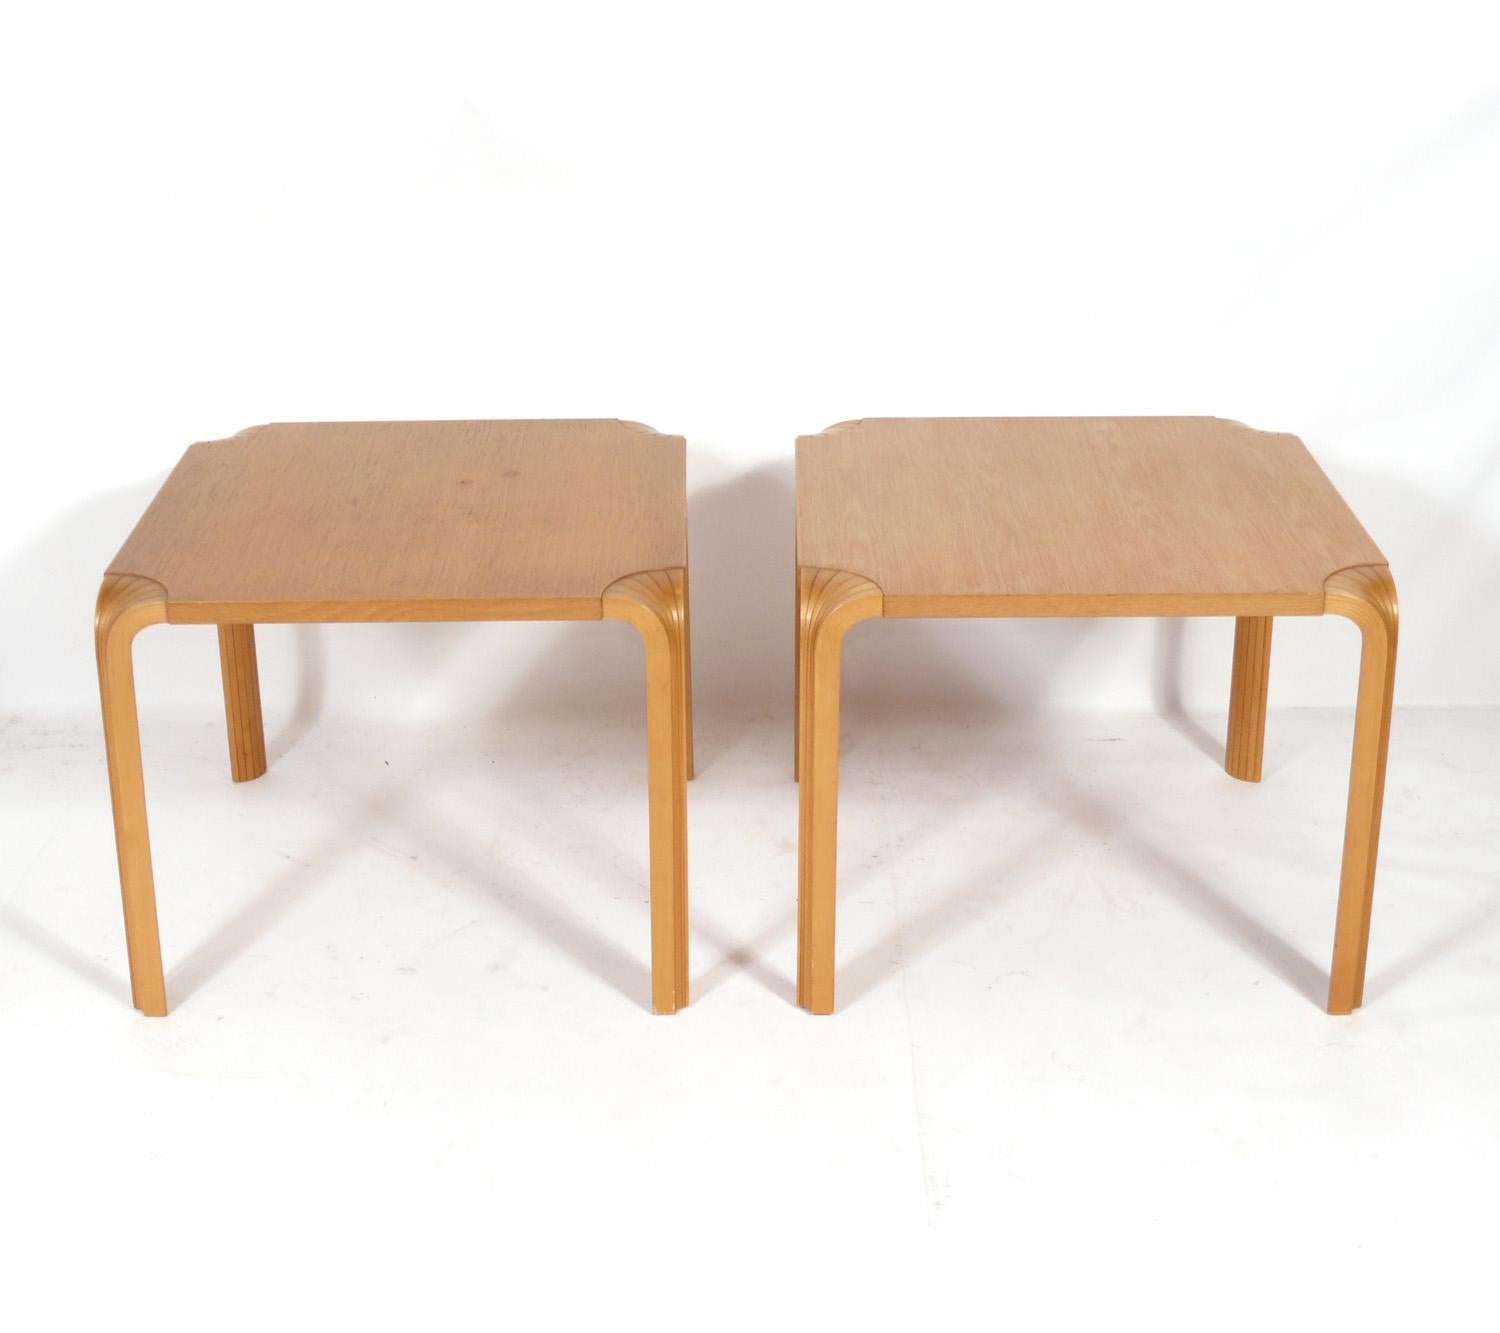 Paire de tables d'appoint d'Alvar Aalto, pour Artek, Finlande, vers les années 1980. Ils conservent leur chaude patine d'origine. Leur taille est polyvalente et elles peuvent être utilisées comme tables d'appoint, tables de chevet ou tables de nuit.